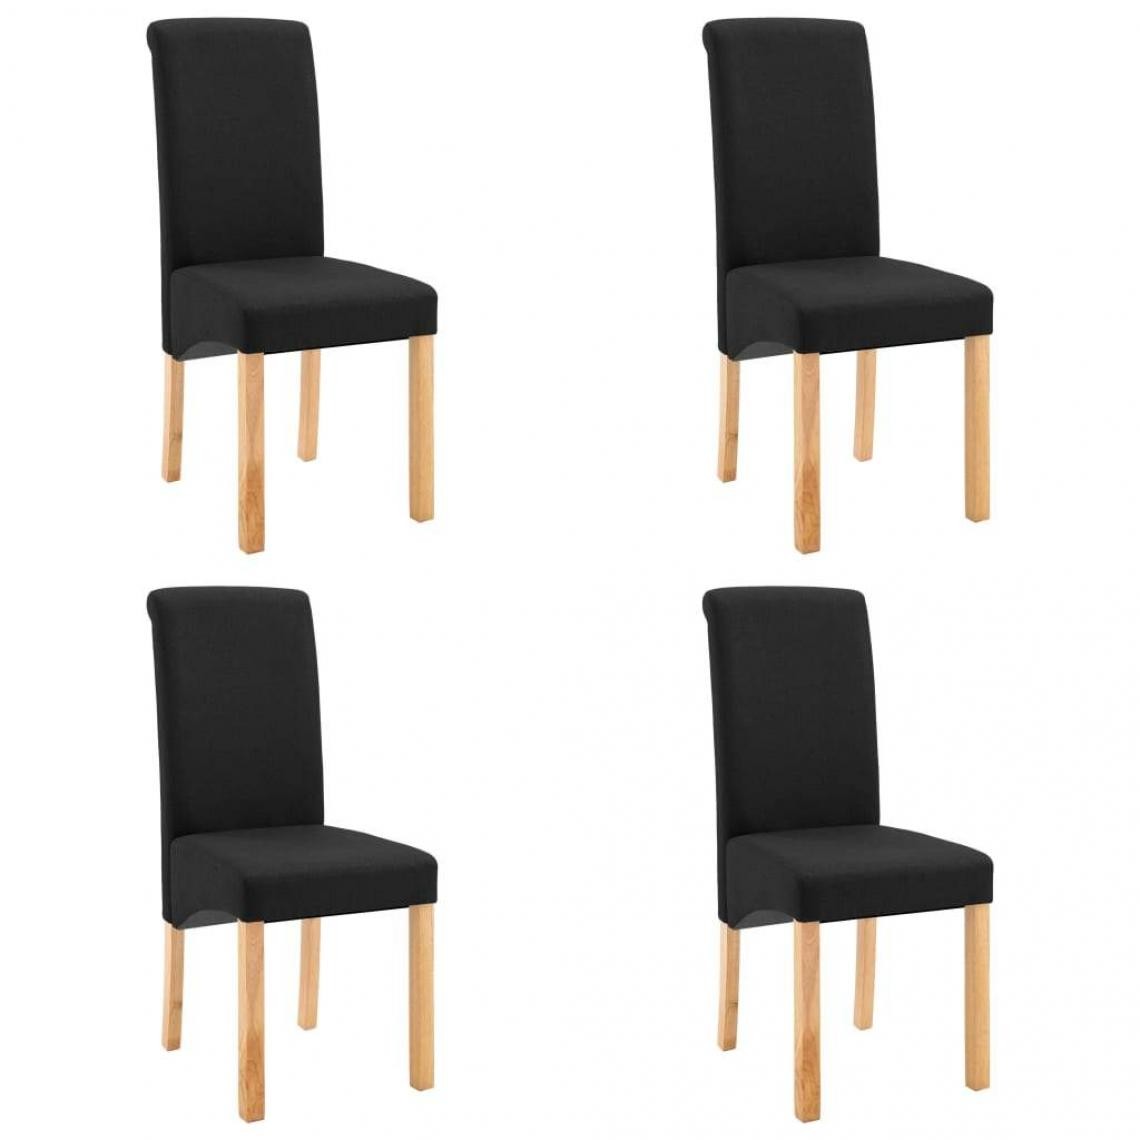 Decoshop26 - Lot de 4 chaises de salle à manger cuisine design moderne tissu noir CDS021837 - Chaises